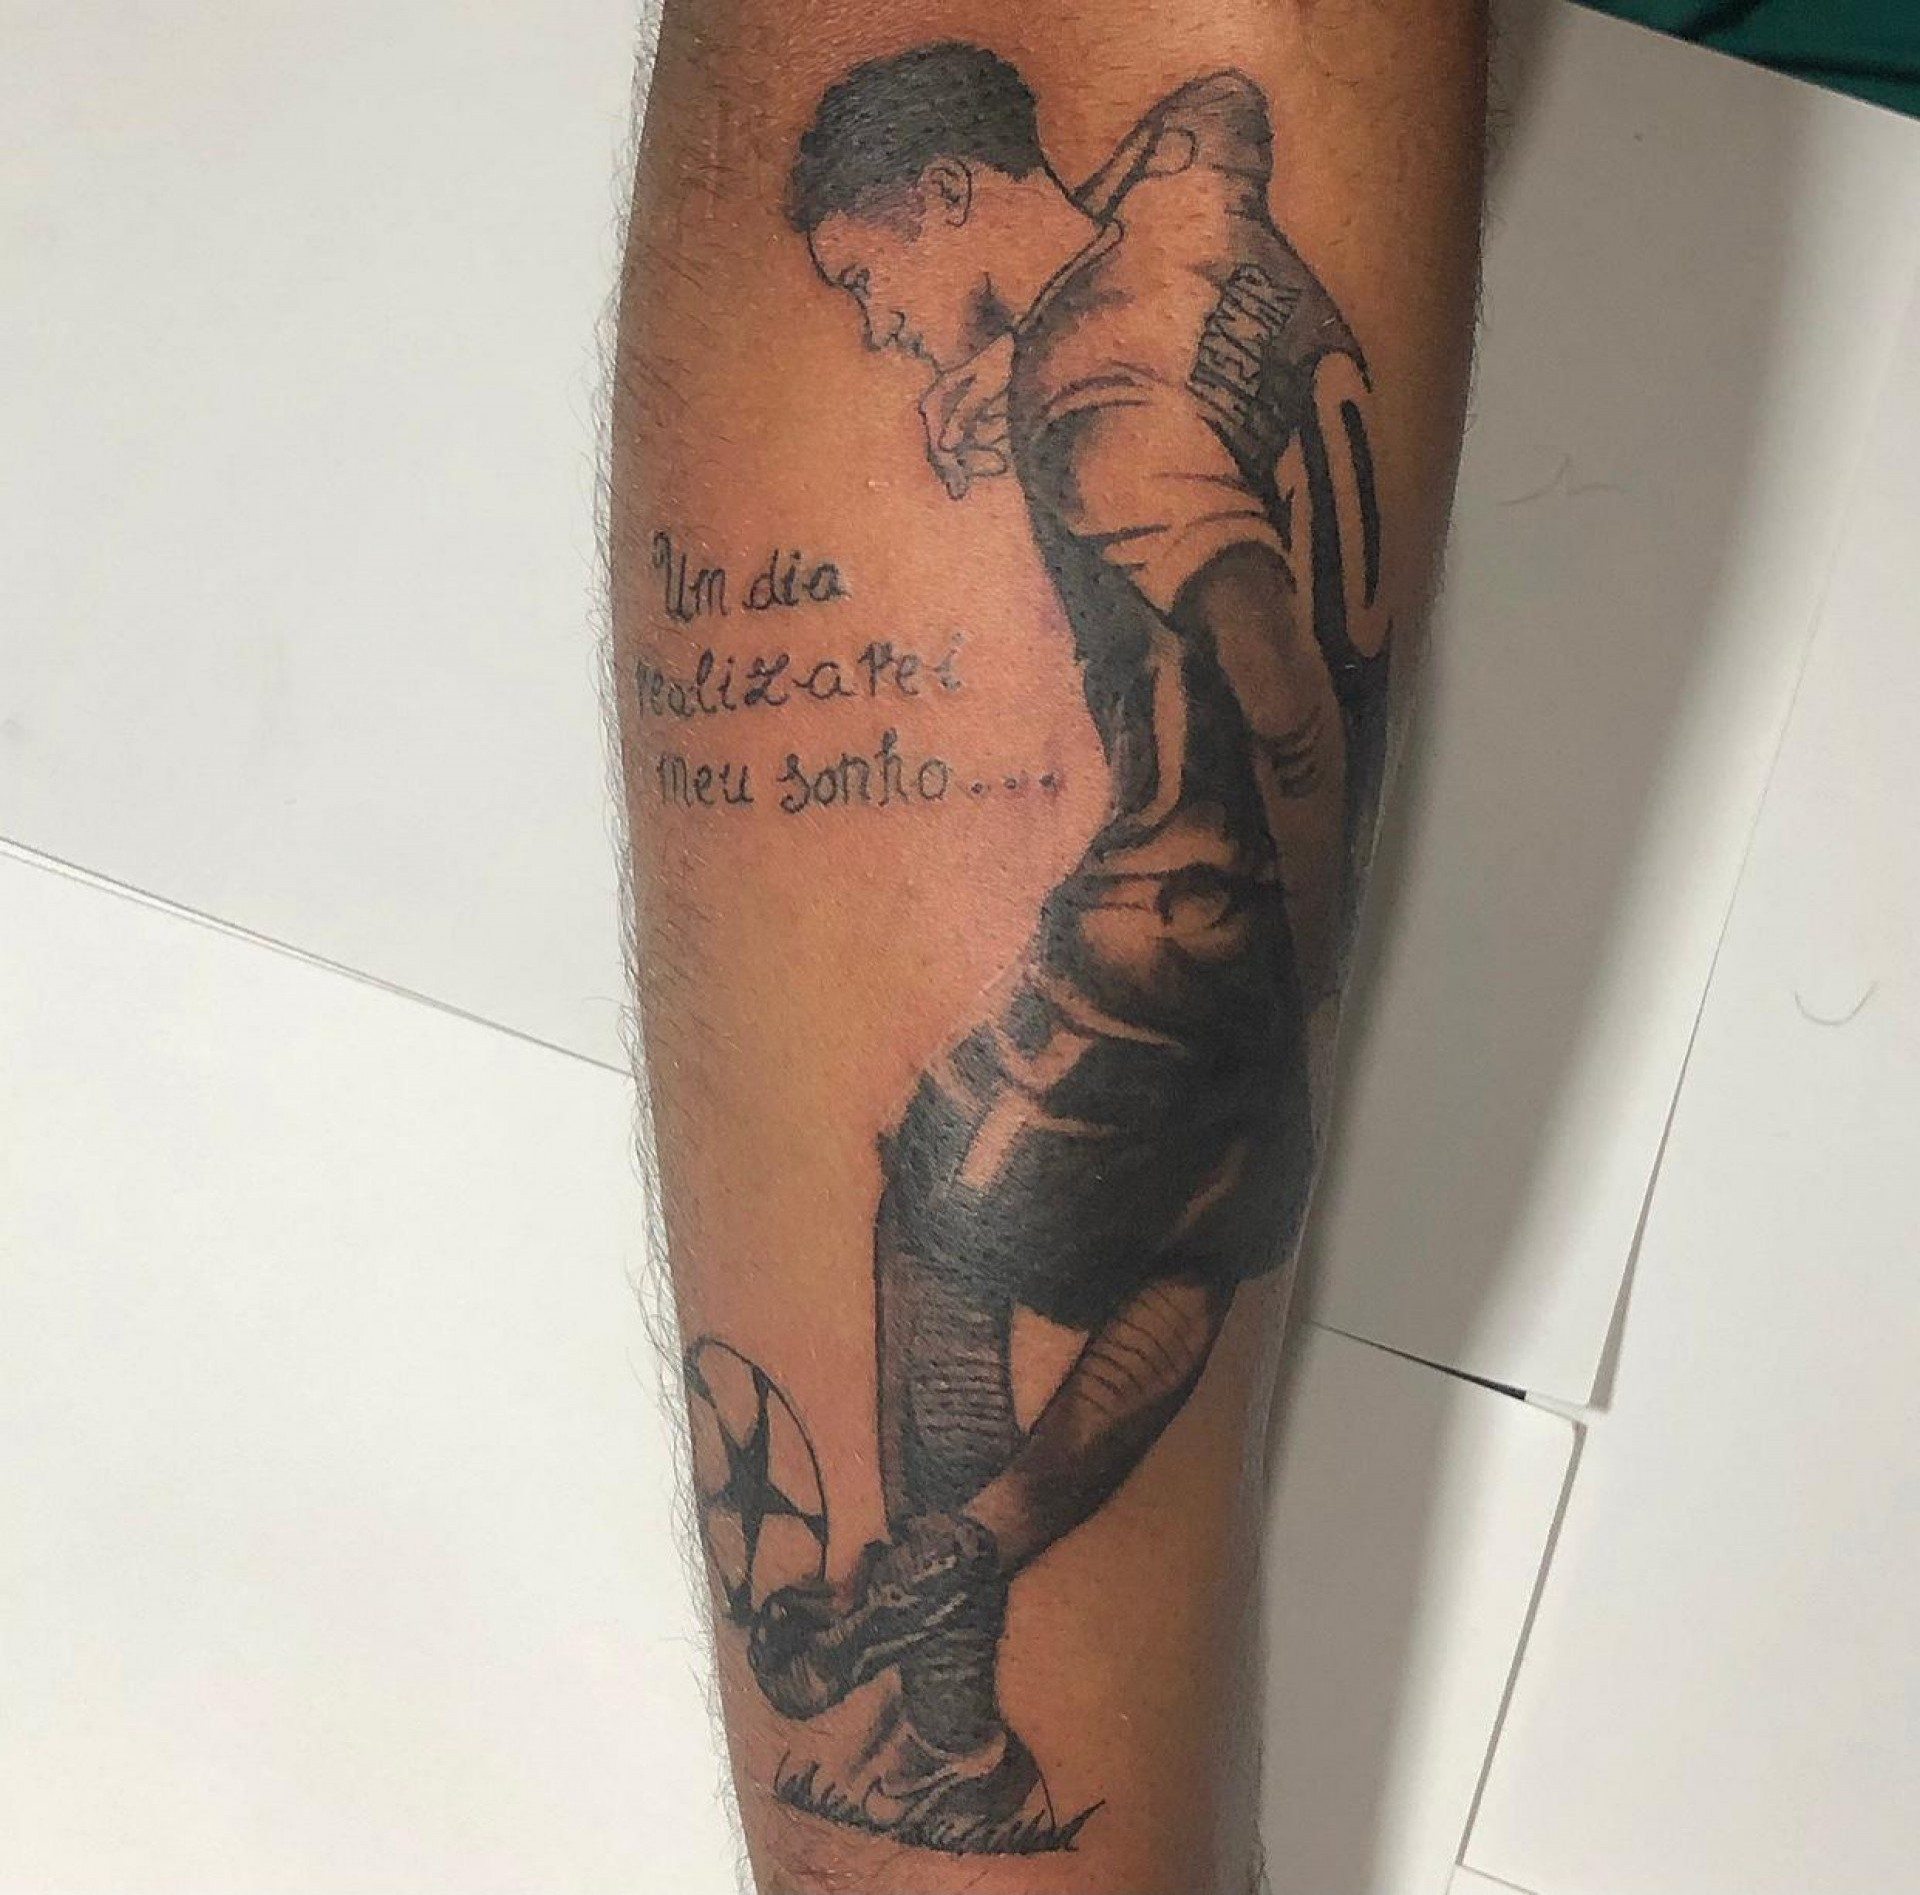 Rhonan carregar imagem de Neymar tatuada no corpo - Reprodução